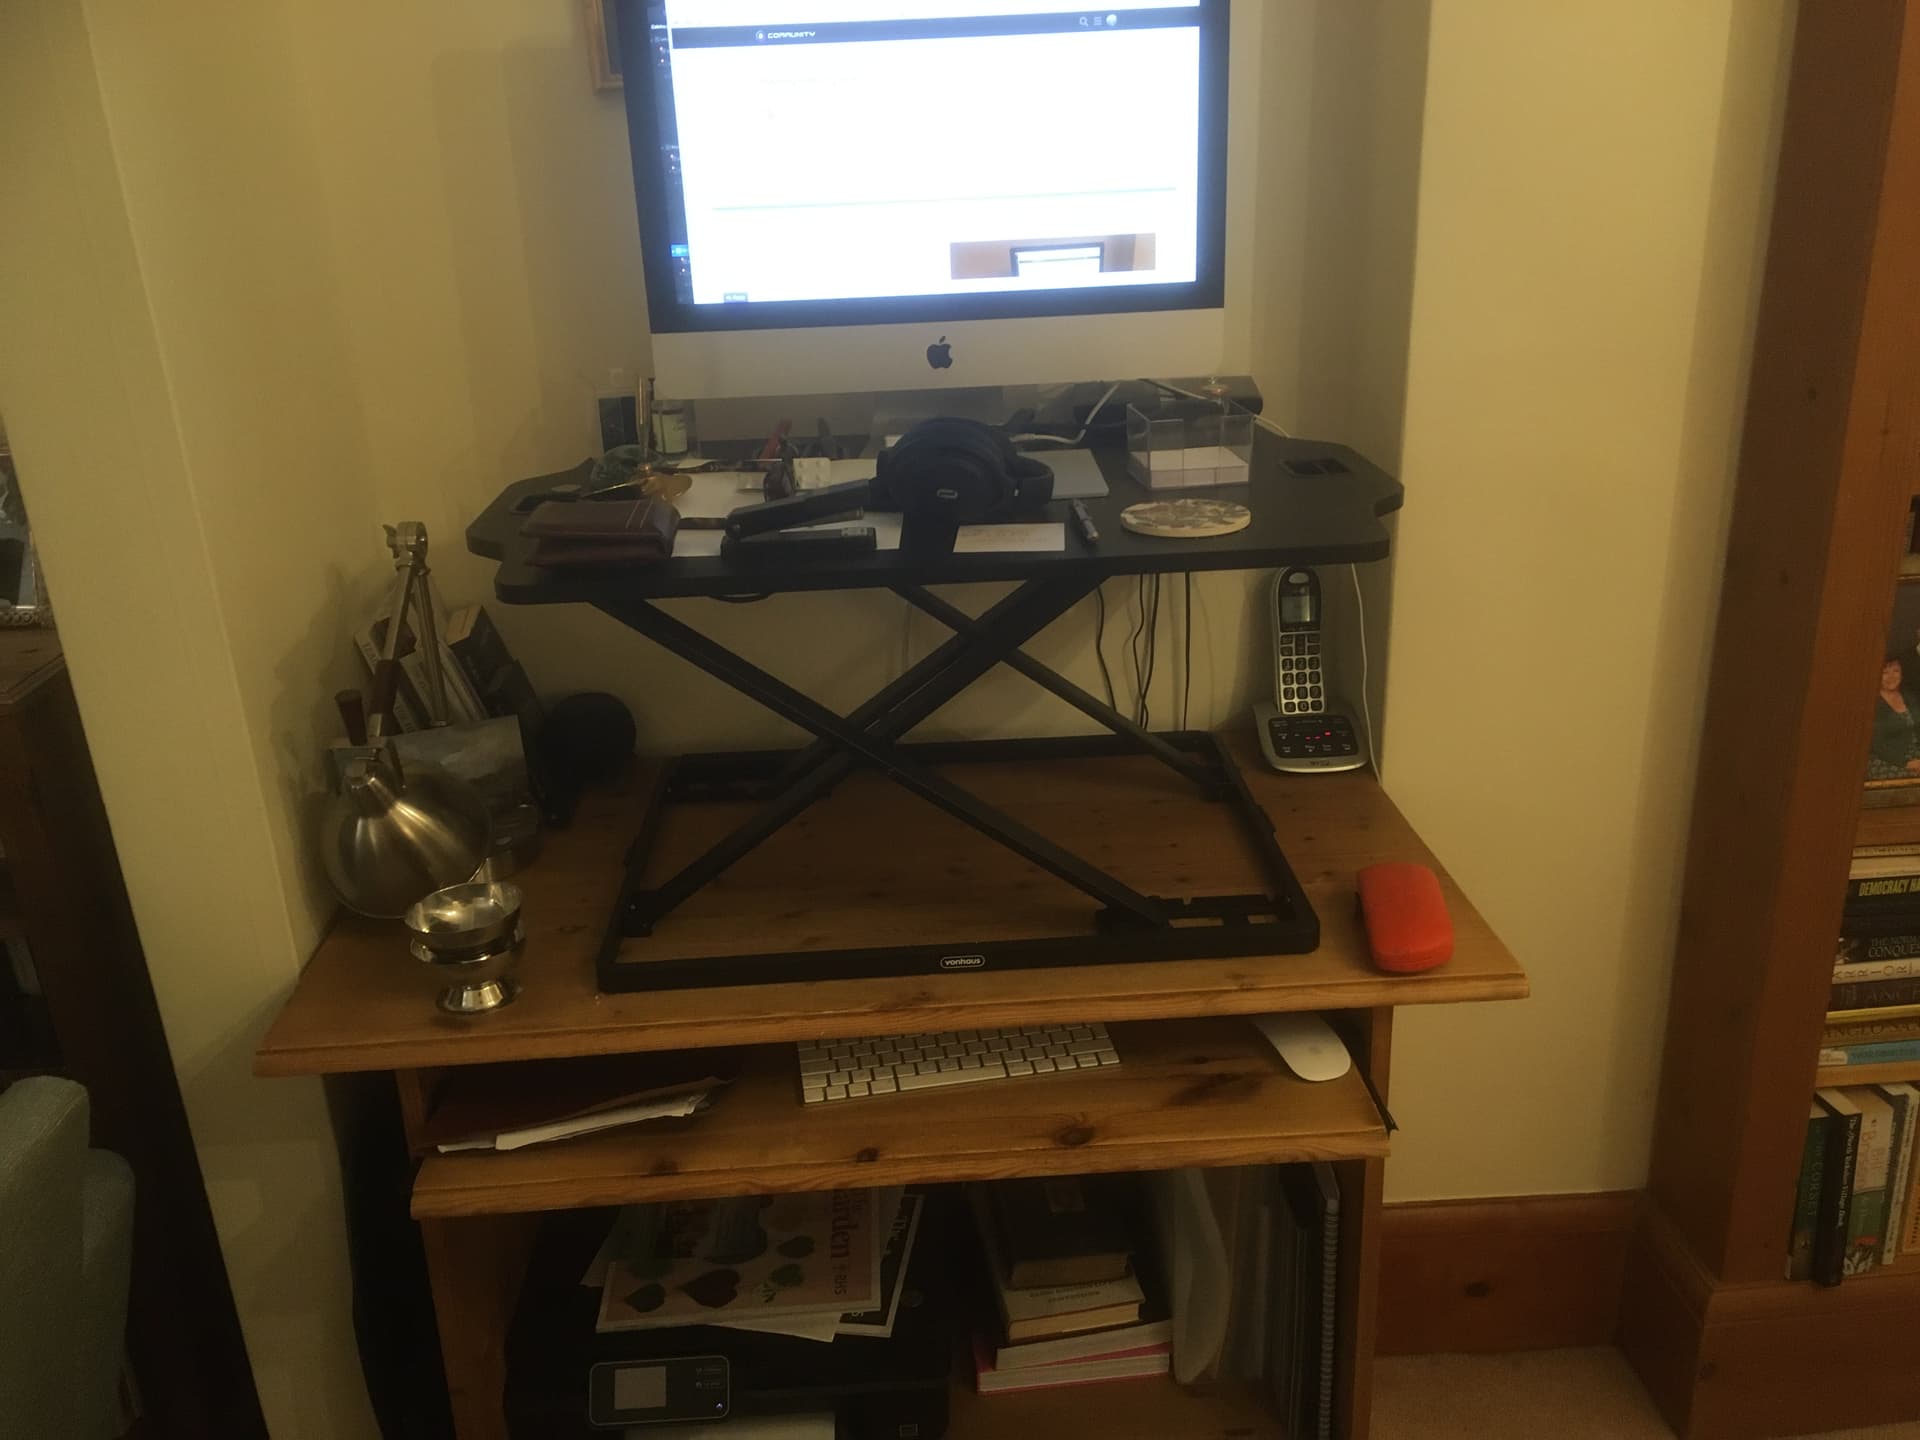 Arden Height Adjustable Standing Desk